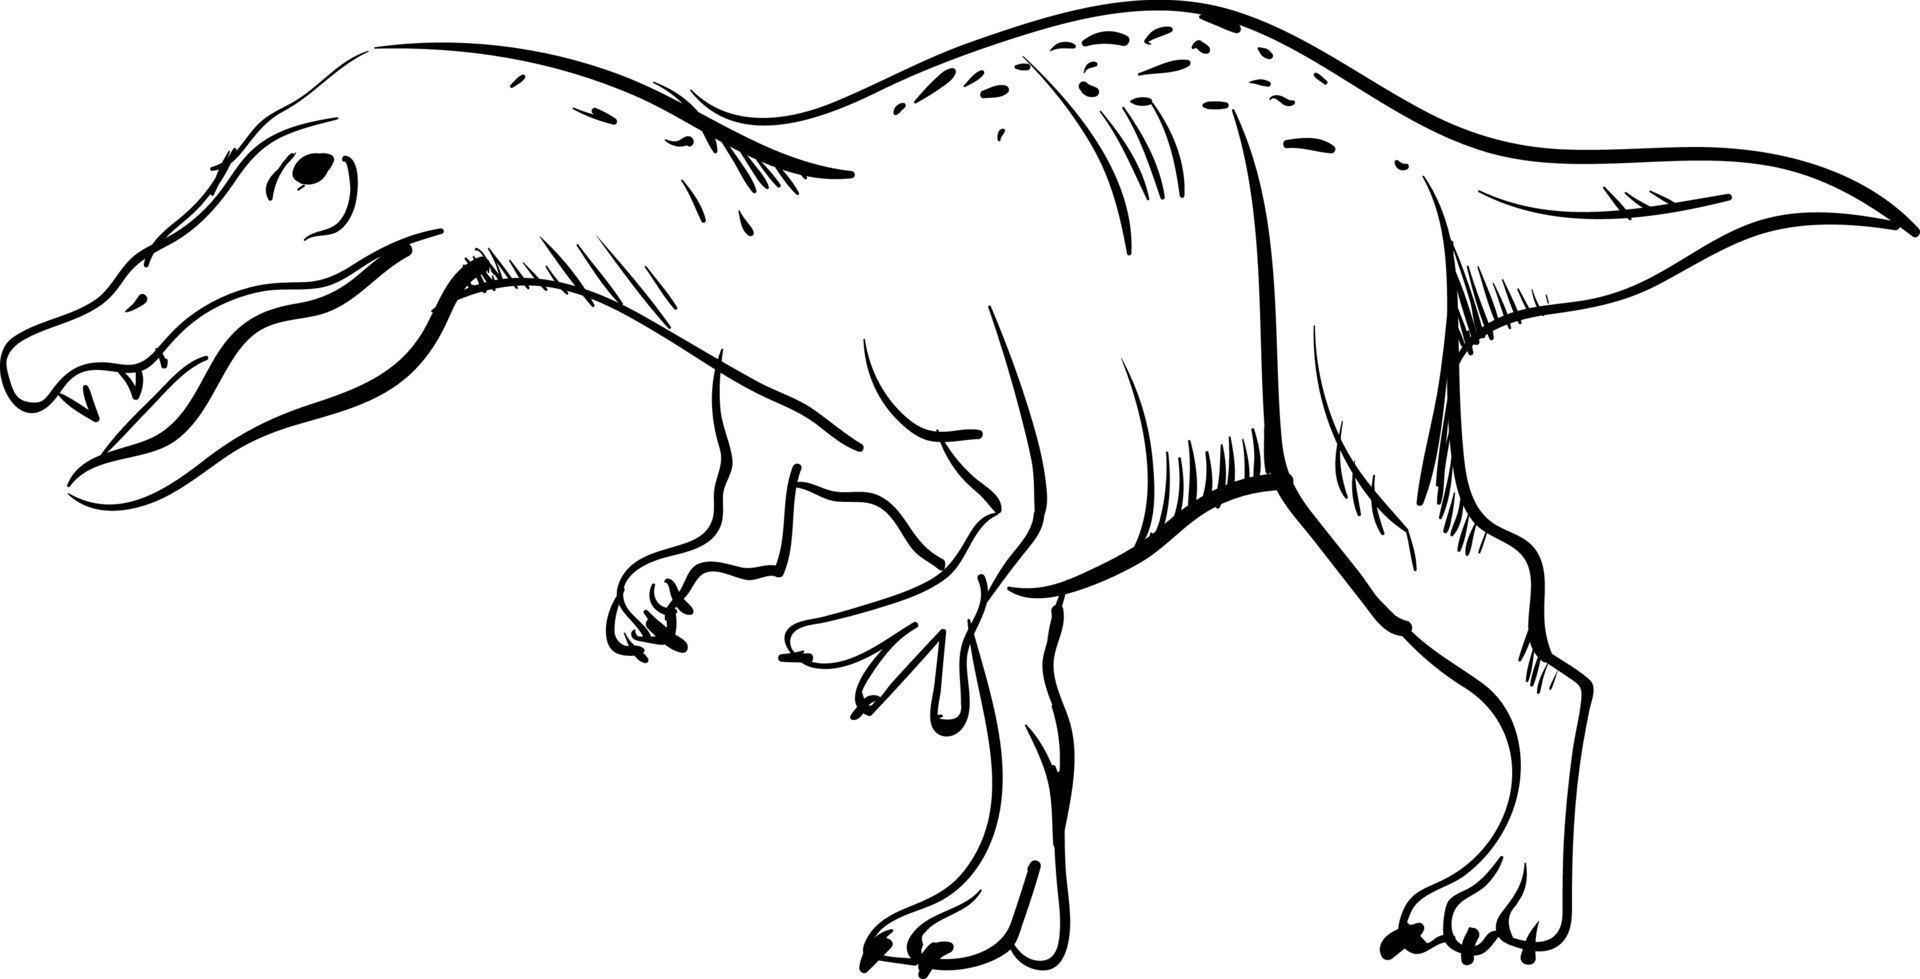 Dibujo de dinosaurios de peligro, ilustración, vector sobre fondo blanco.